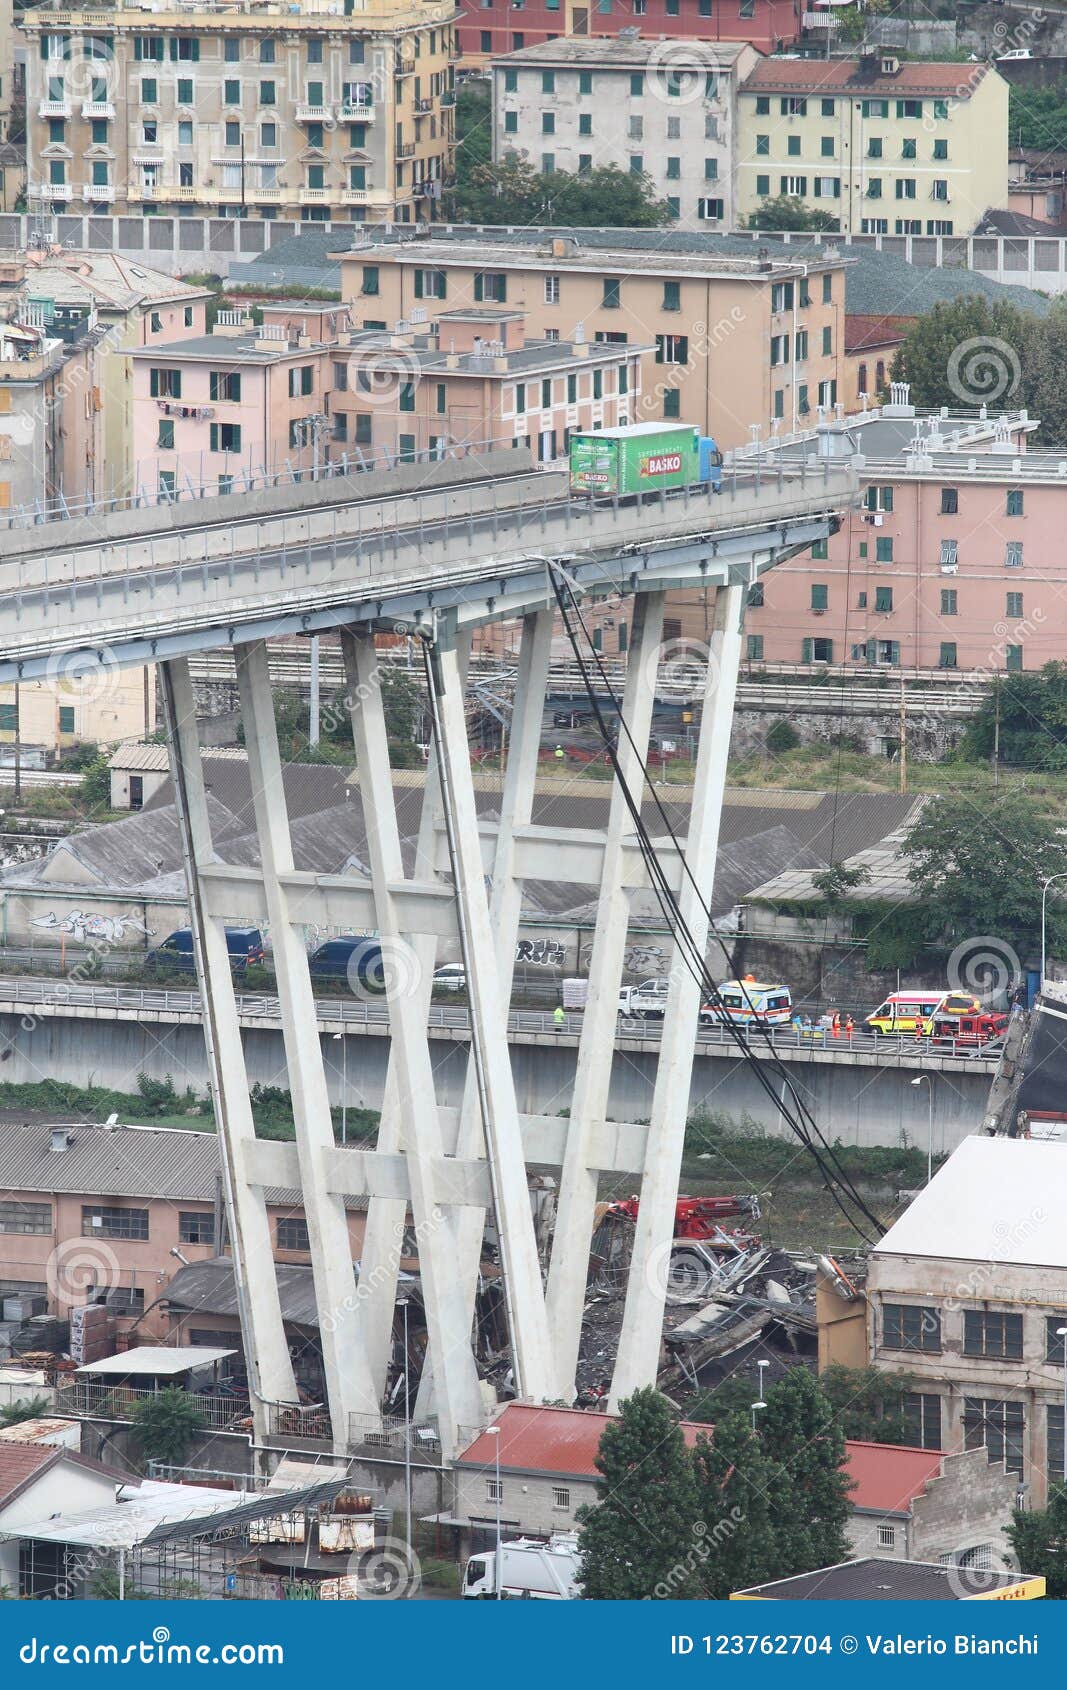 Der Einsturz der Morandi-Brücke in Genua - 14. August 2018 - Genoa Italy - der Konstruktionsfehler der Morandi-Brücke in Genua nannte auch den Polcevera-Viadukt